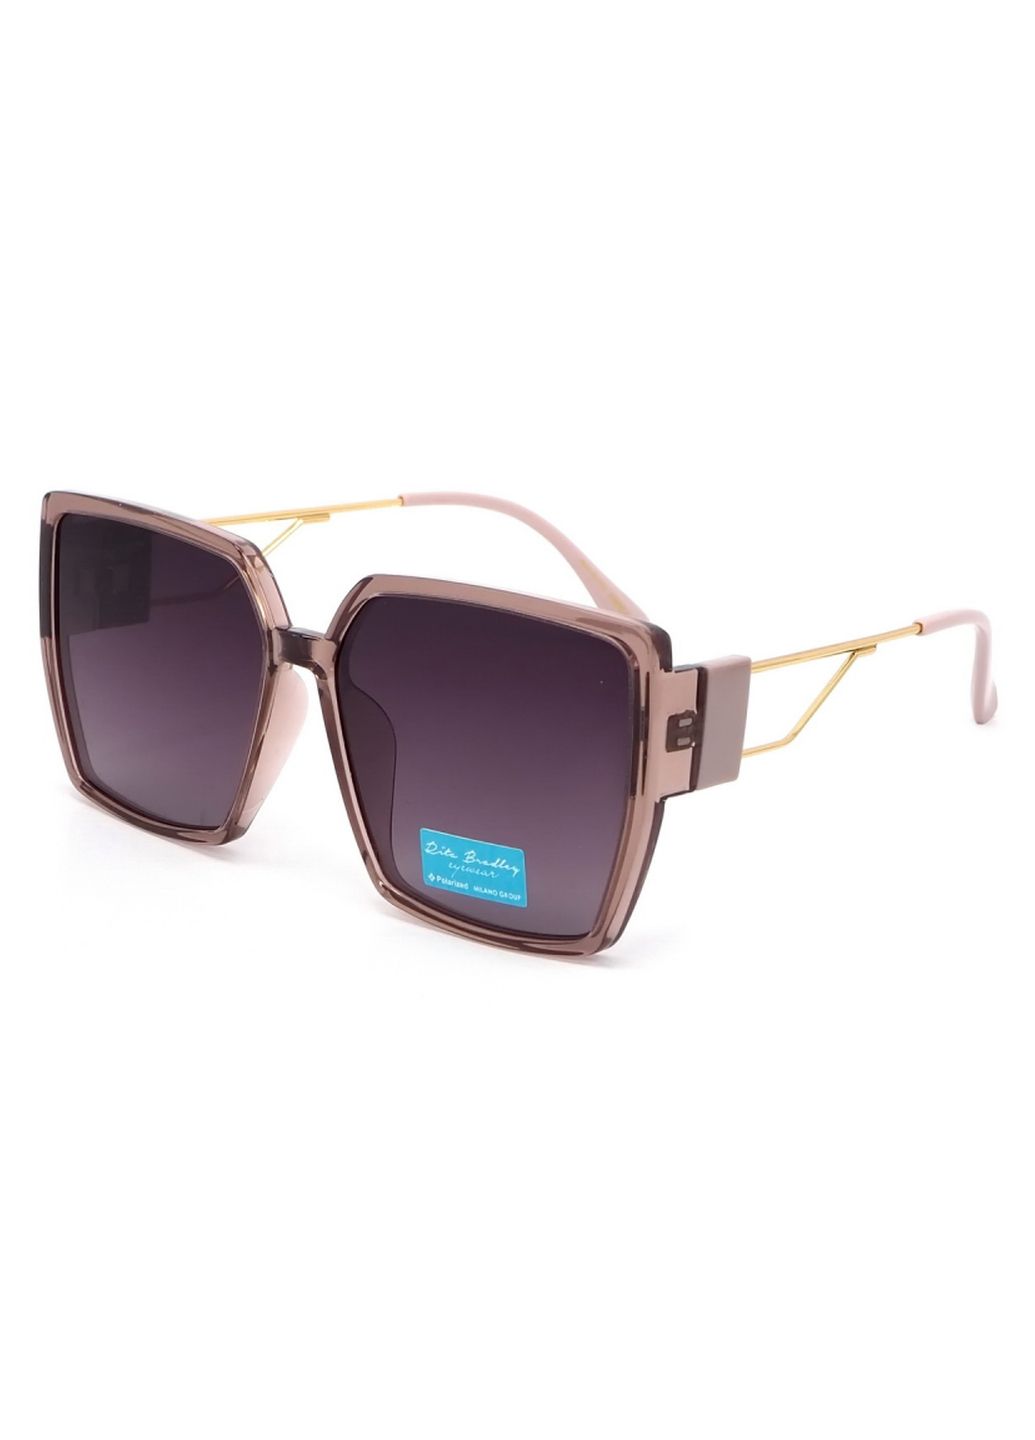 Купить Женские солнцезащитные очки Rita Bradley с поляризацией RB732 112084 в интернет-магазине